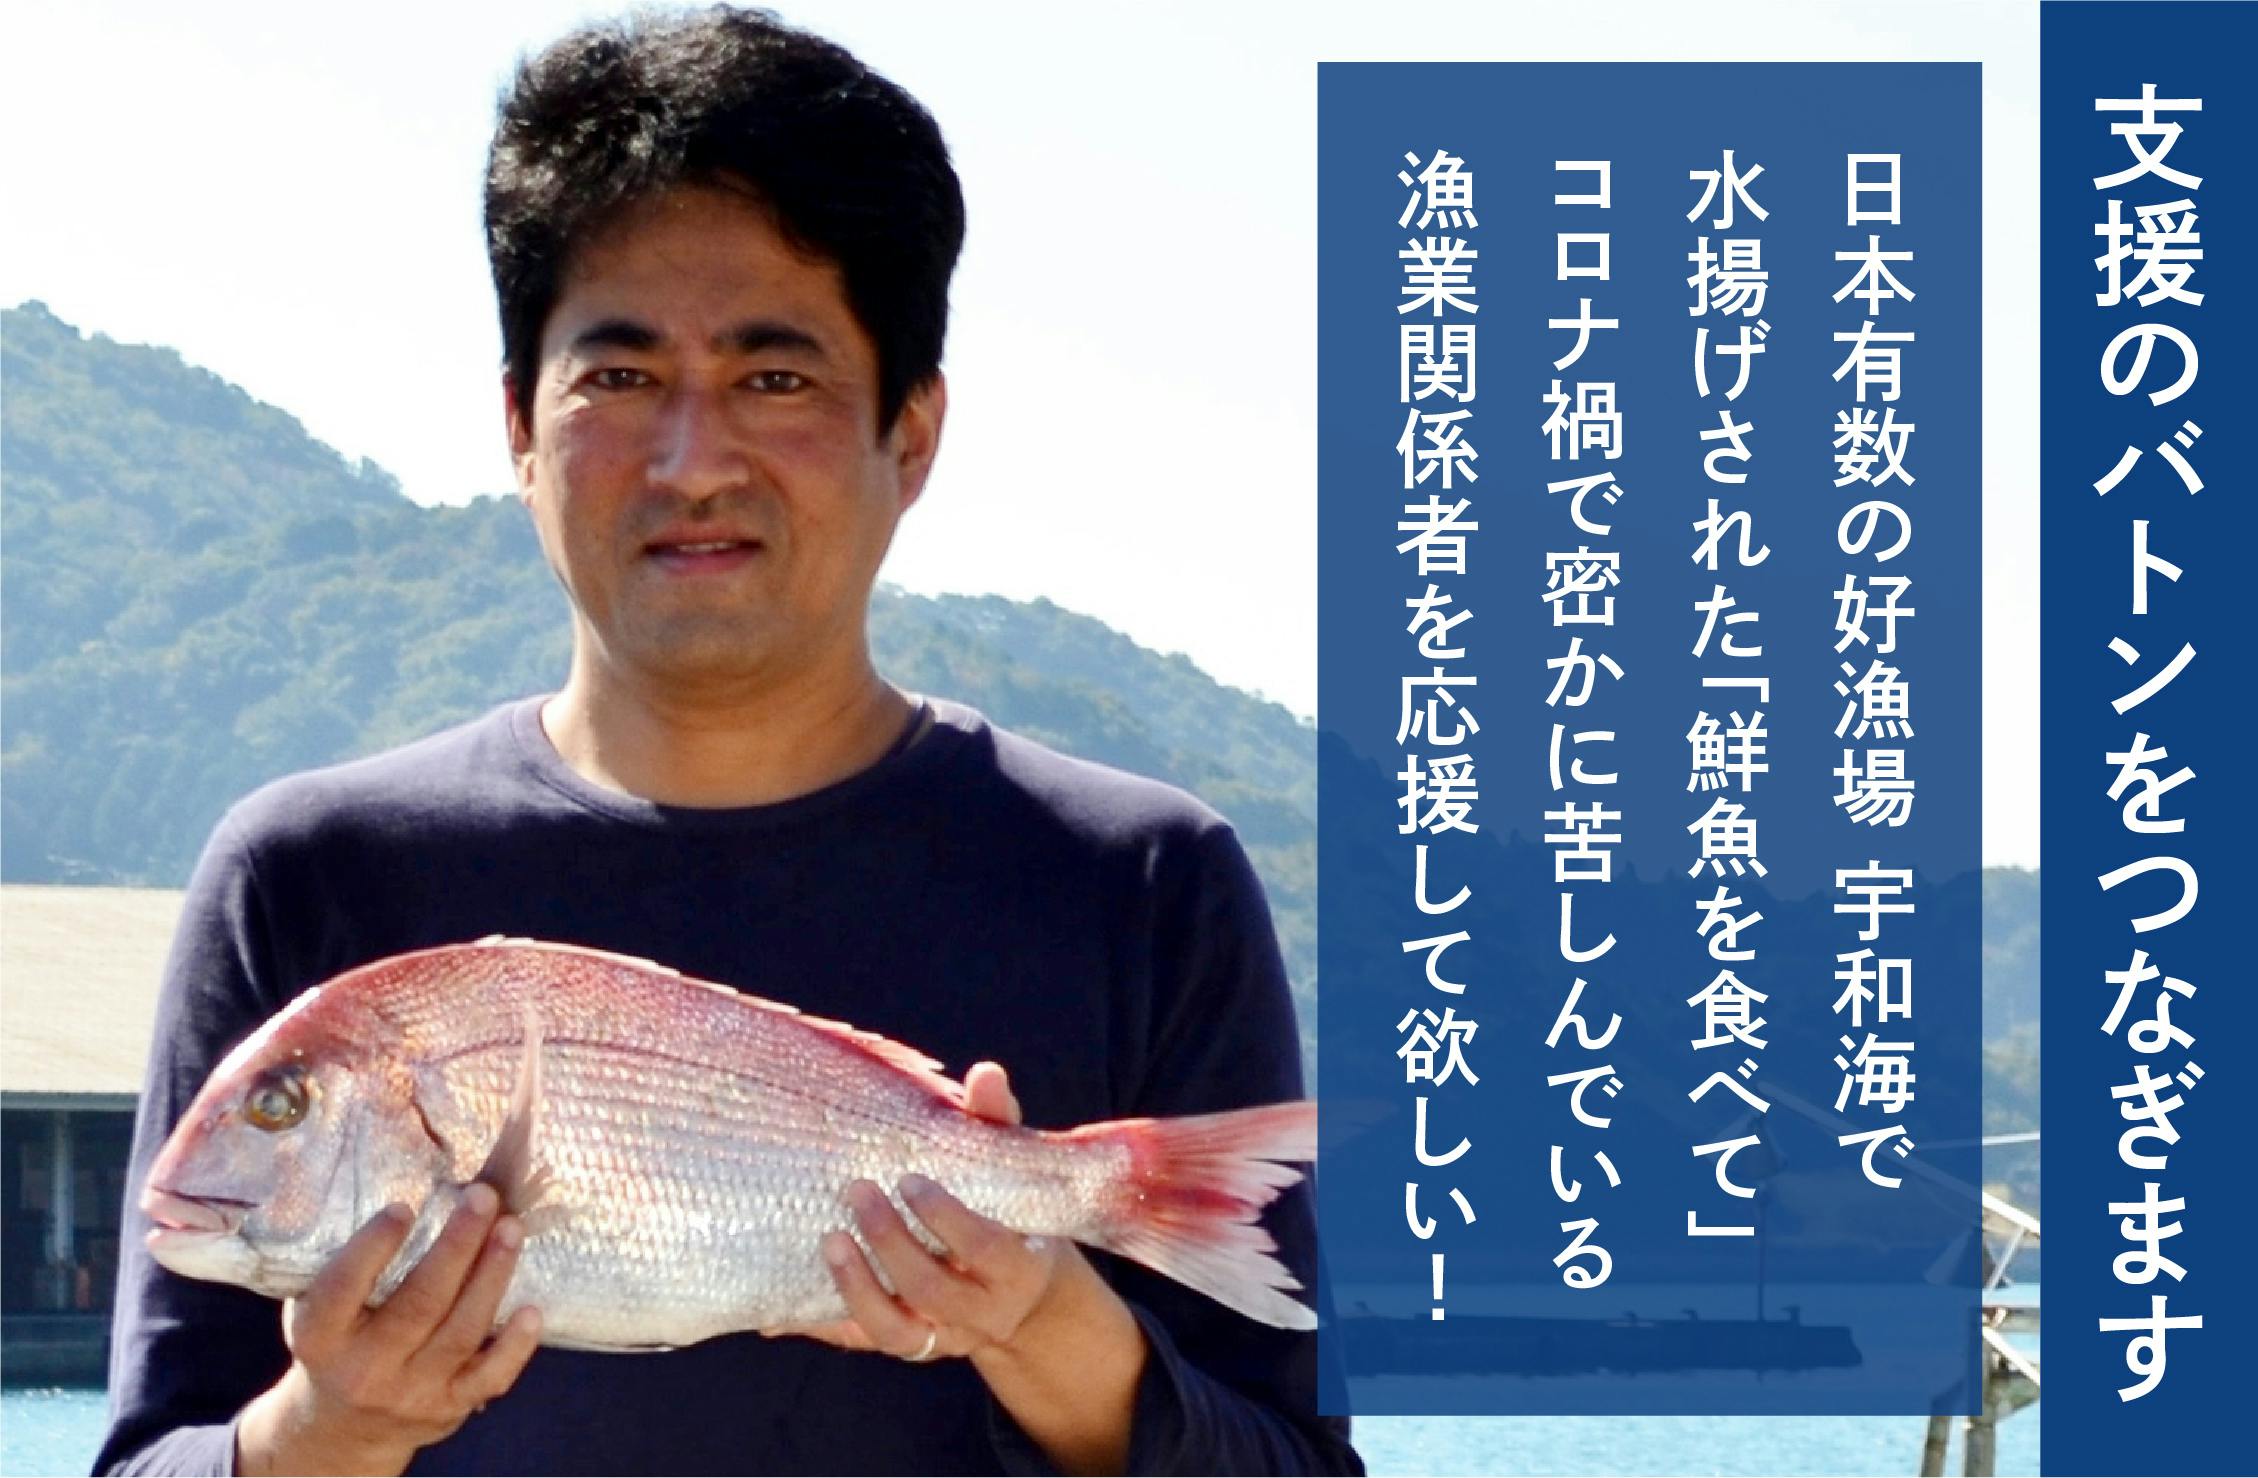 日本有数の好漁場「宇和海」で水揚げされた、八幡浜産の朝穫れ鮮魚を食べて、コロナ禍で苦しむ漁業関　CAMPFIRE　(キャンプファイヤー)